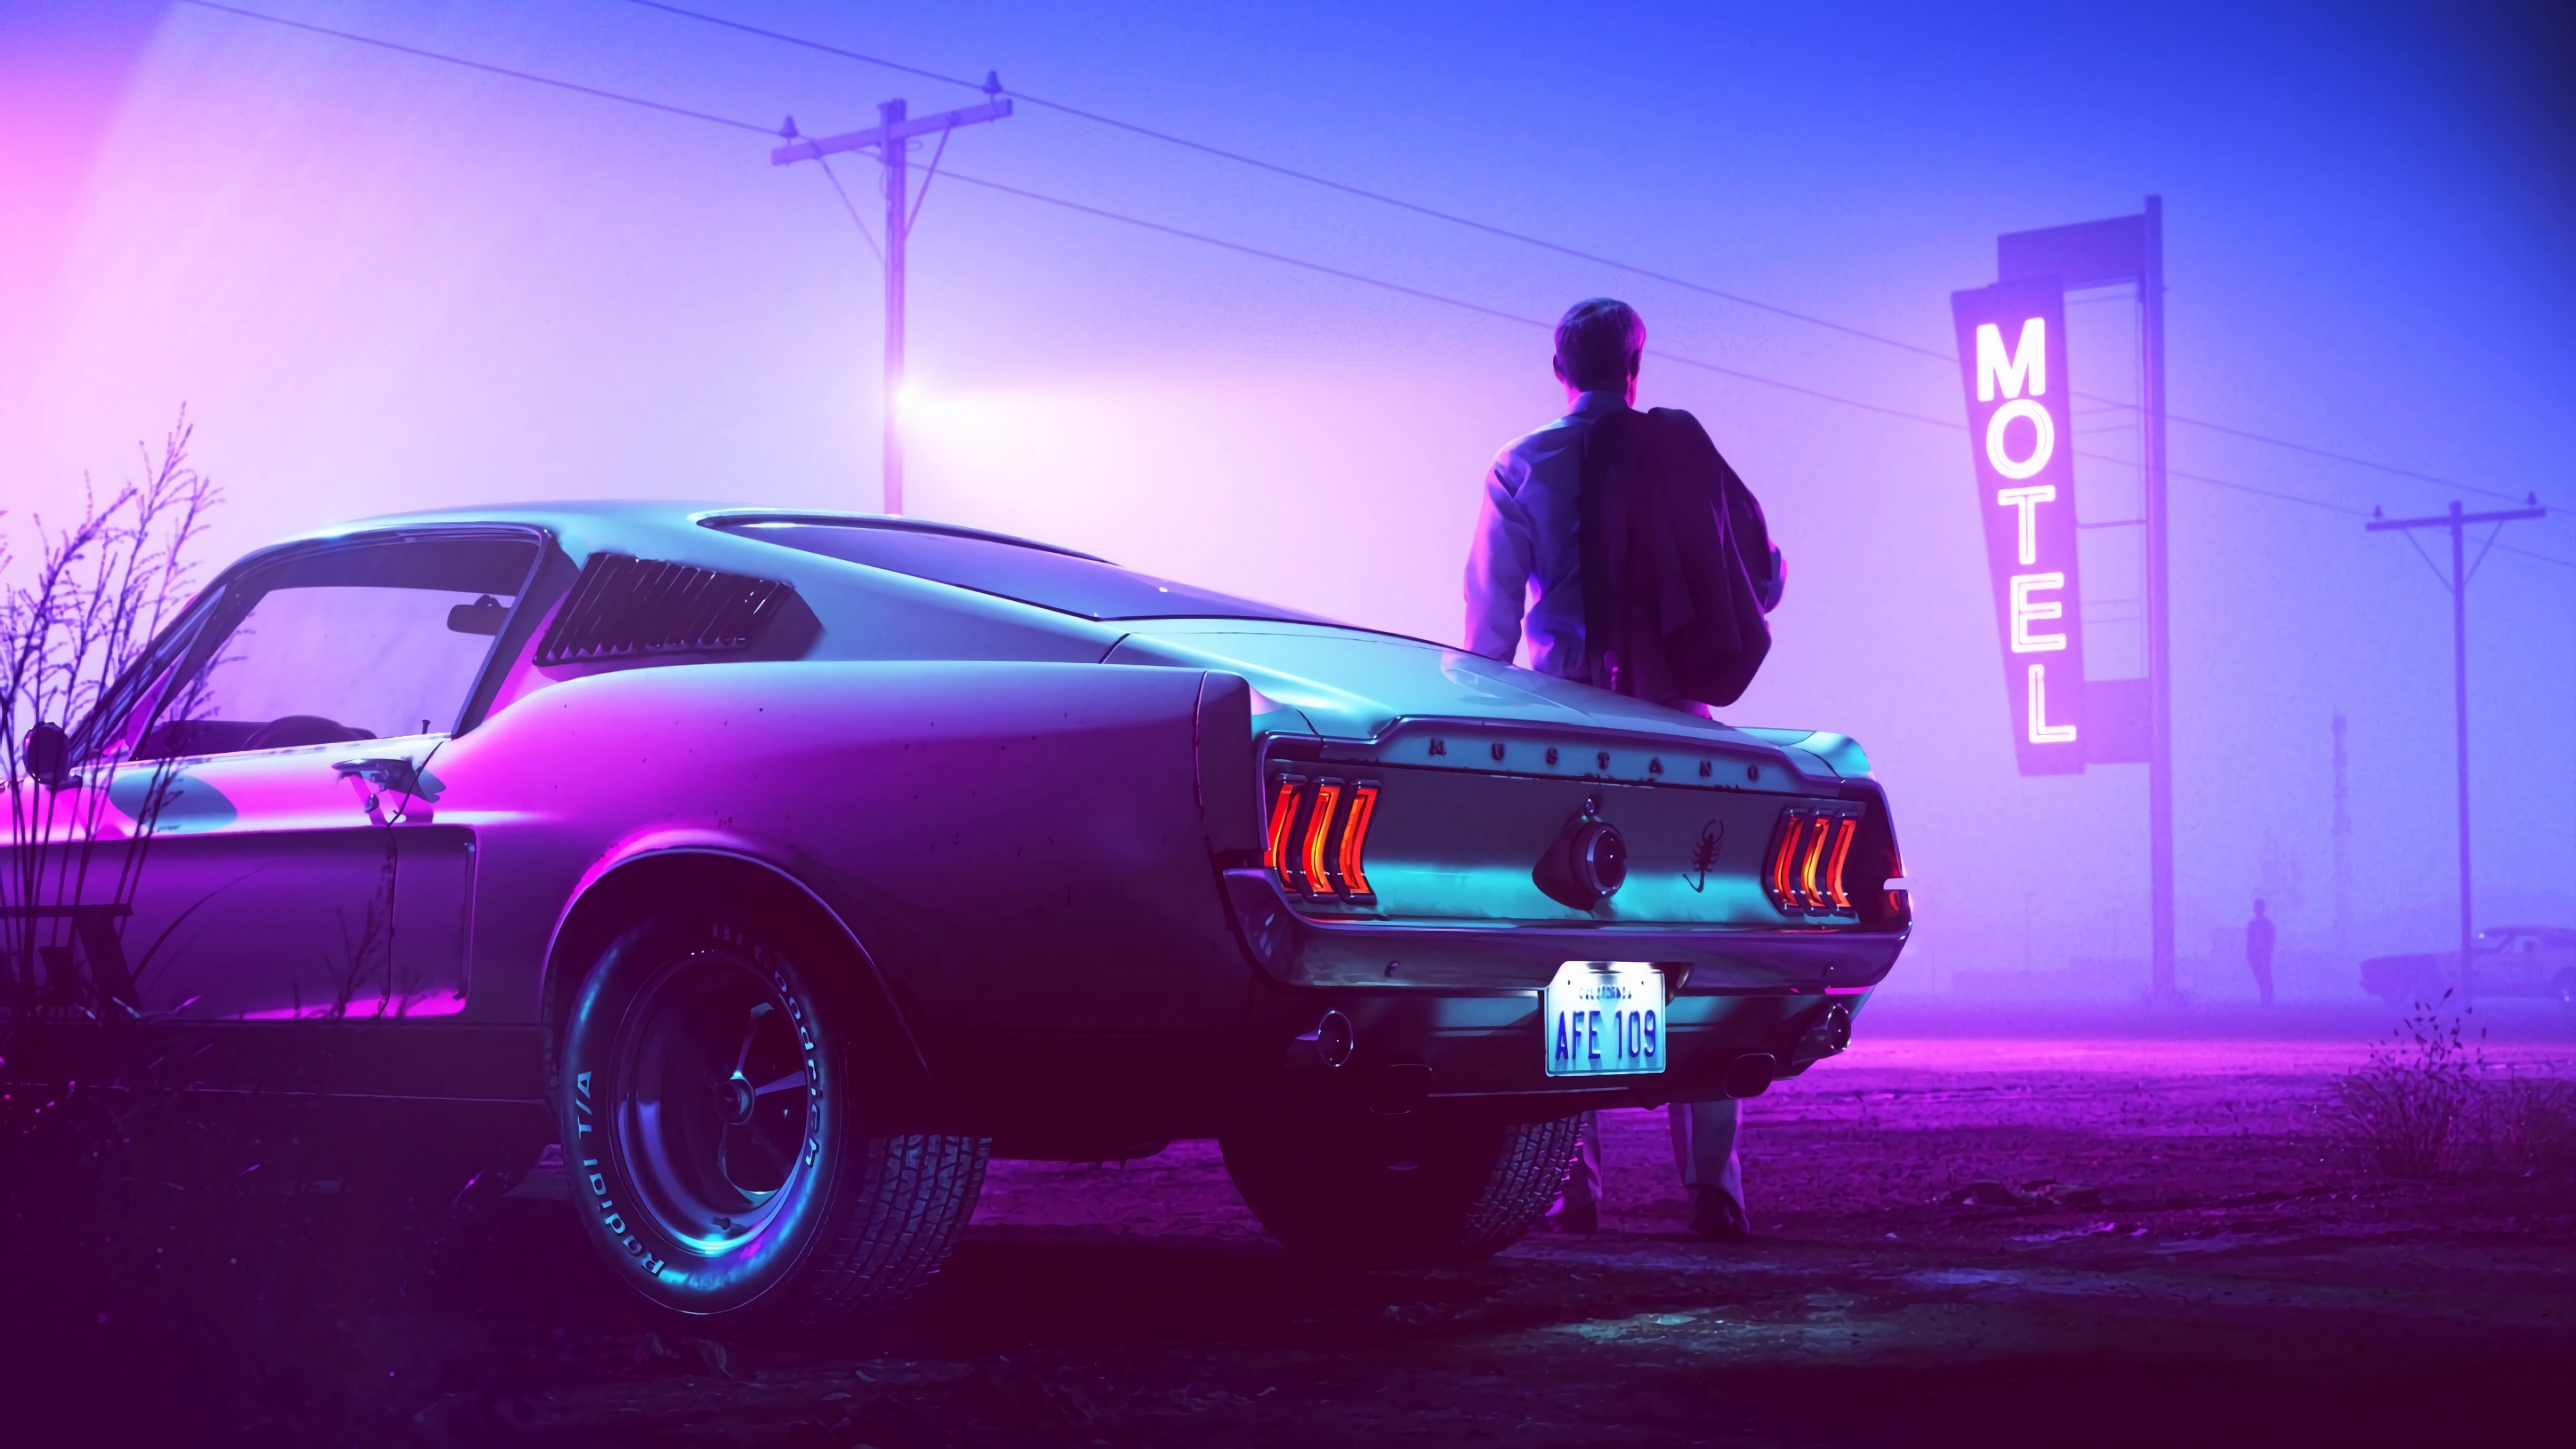 Cyberpunk Car Neon wallpaper by Samy_Fox - Download on ZEDGE™ | 1add